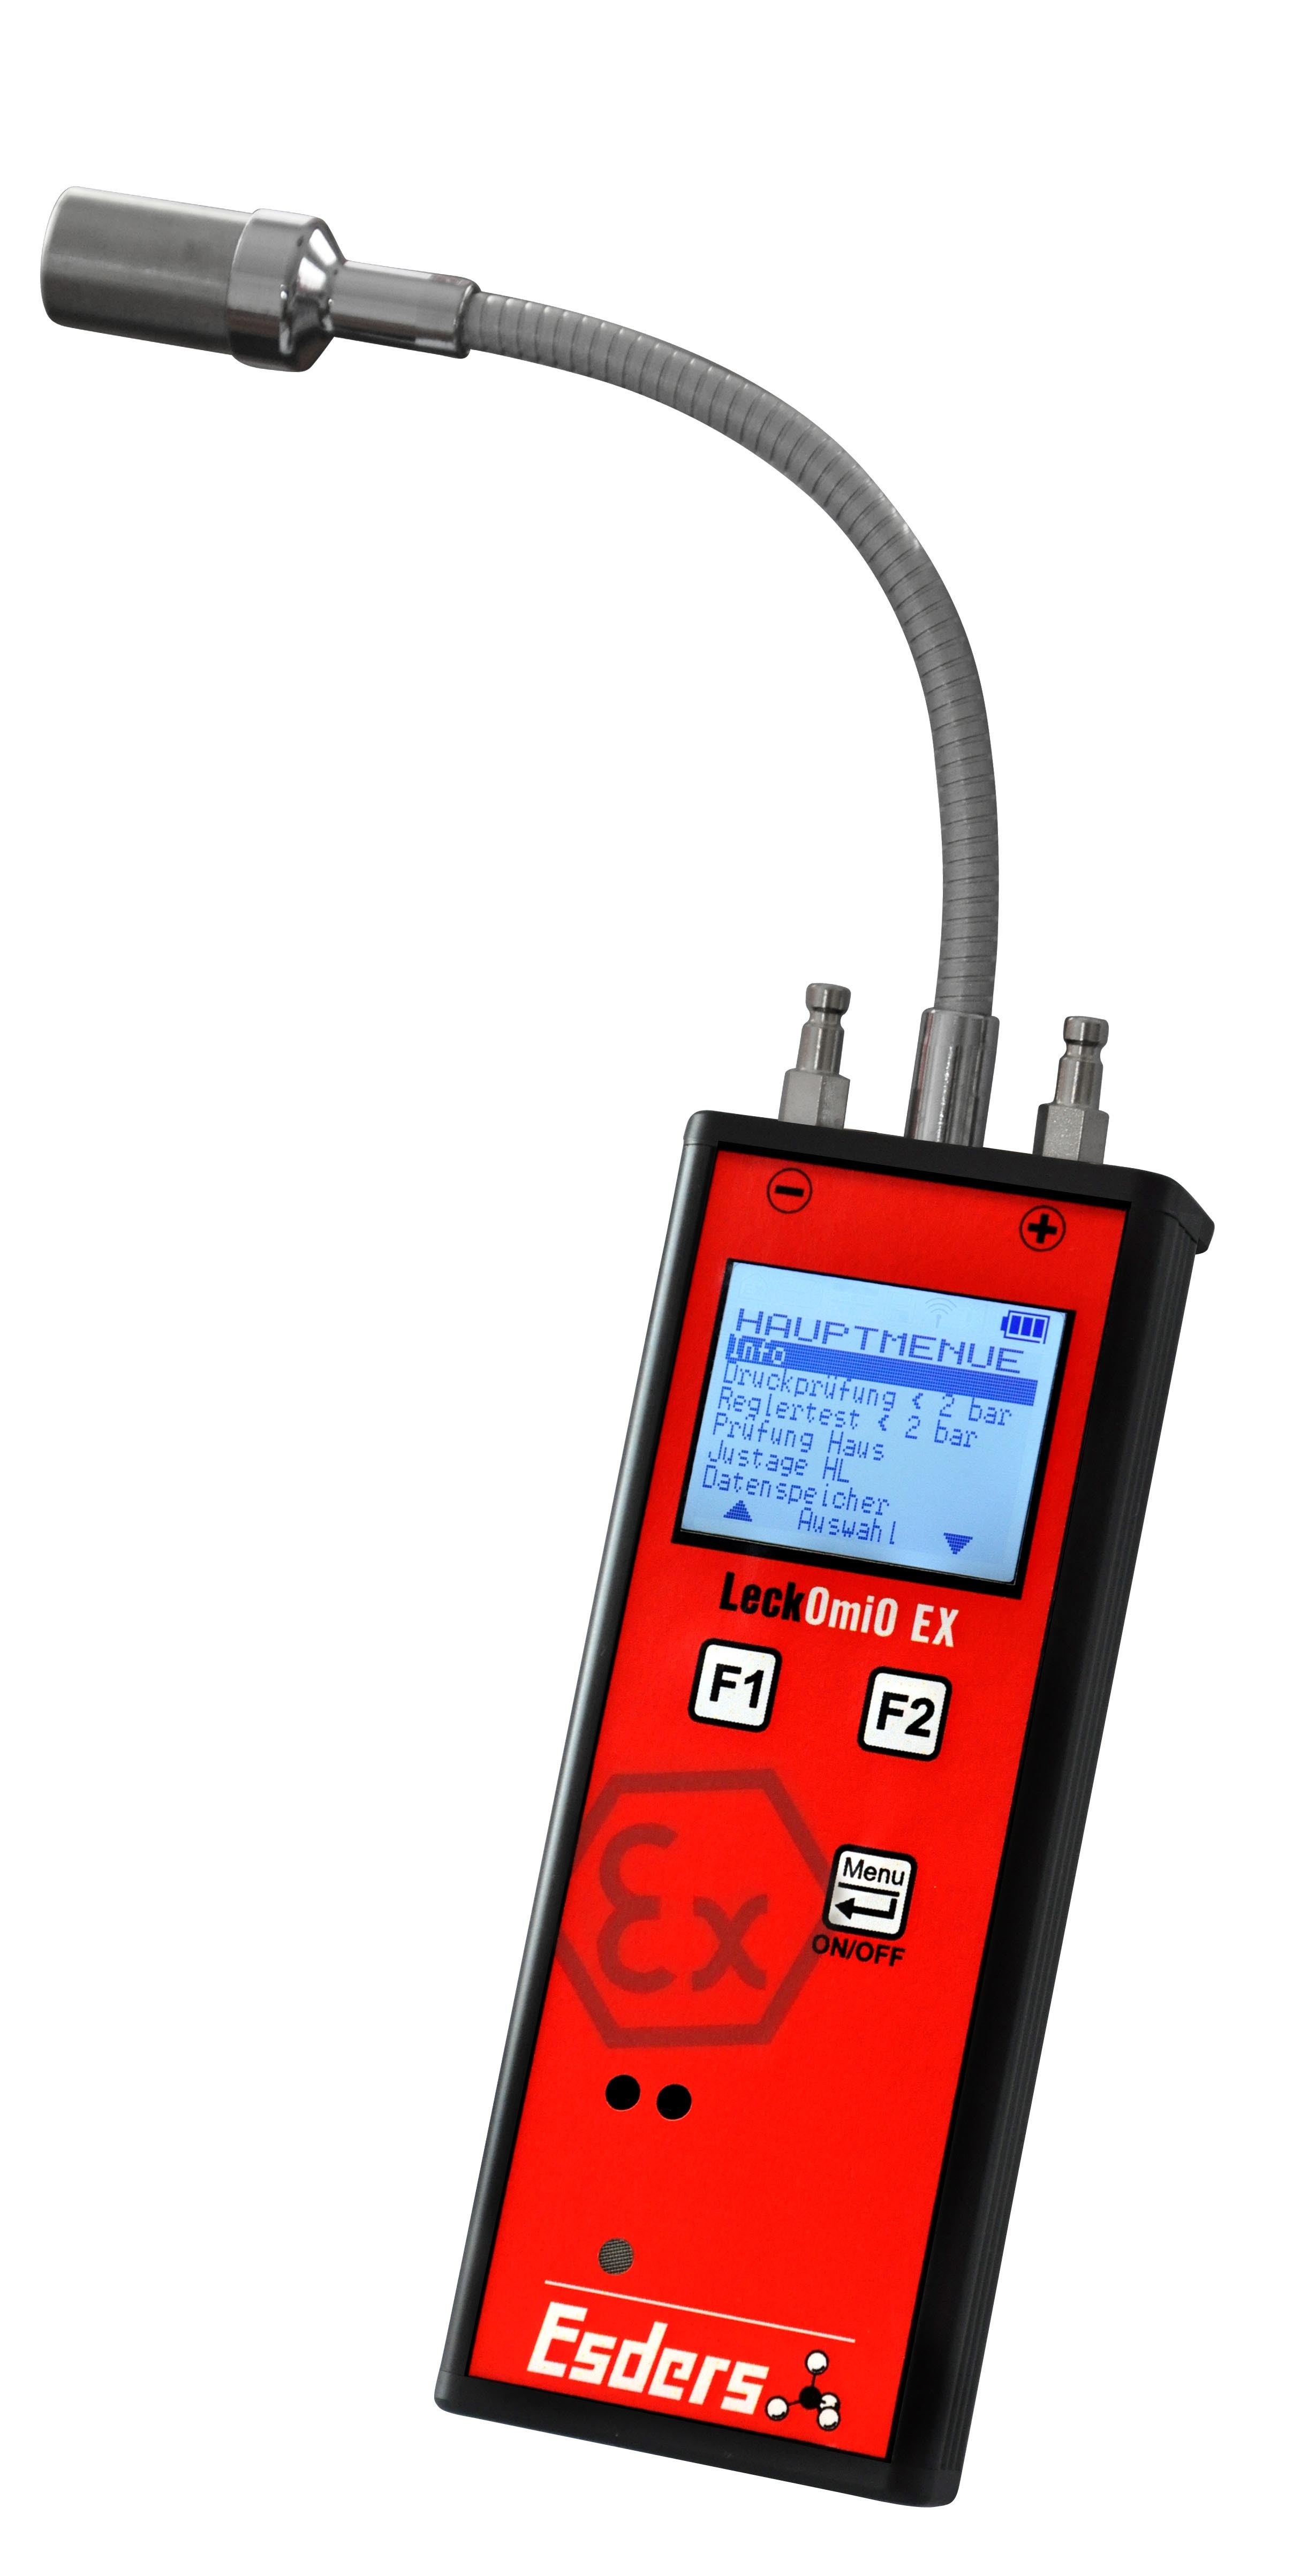 LeckOmiO EX gaslekzoeker batterij-uitvoering 2 bar
